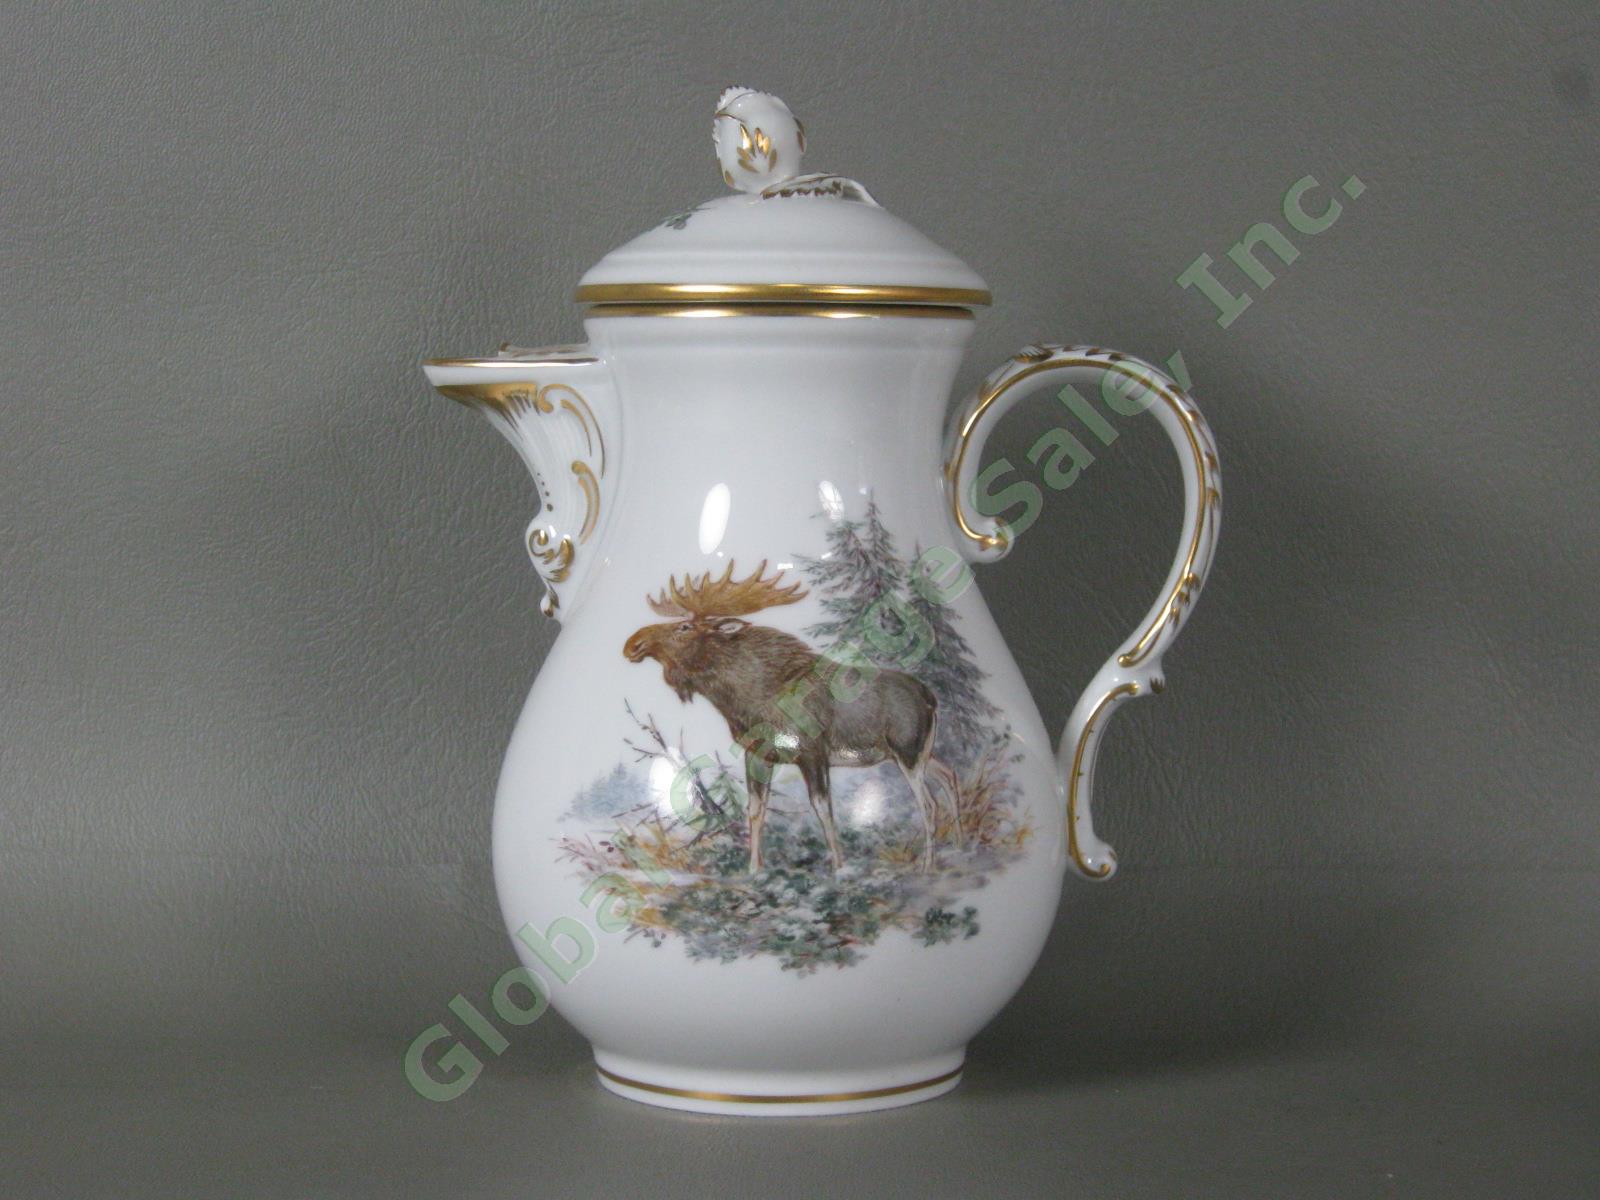 RARE Antique Meissen German Porcelain Wildlife Coffee Service Tea Set Pot Cups + 1